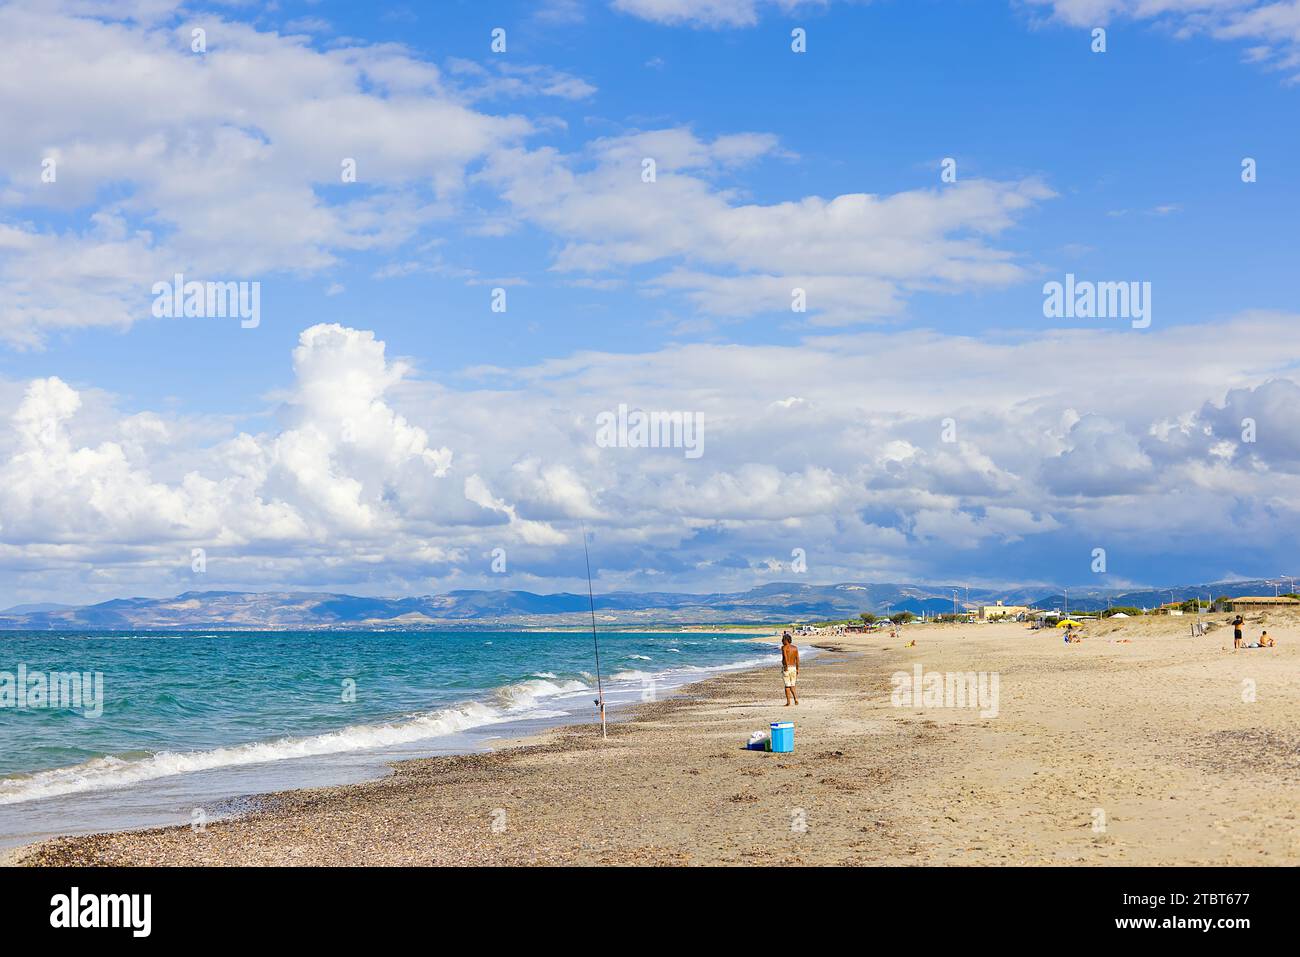 Am Strand Plata Mona, Sardinien, Italien, ist ein sardischer Fischer mit einer Rute abgebildet. Das Bild zeigt den Strand und die fernen Berge. Stockfoto